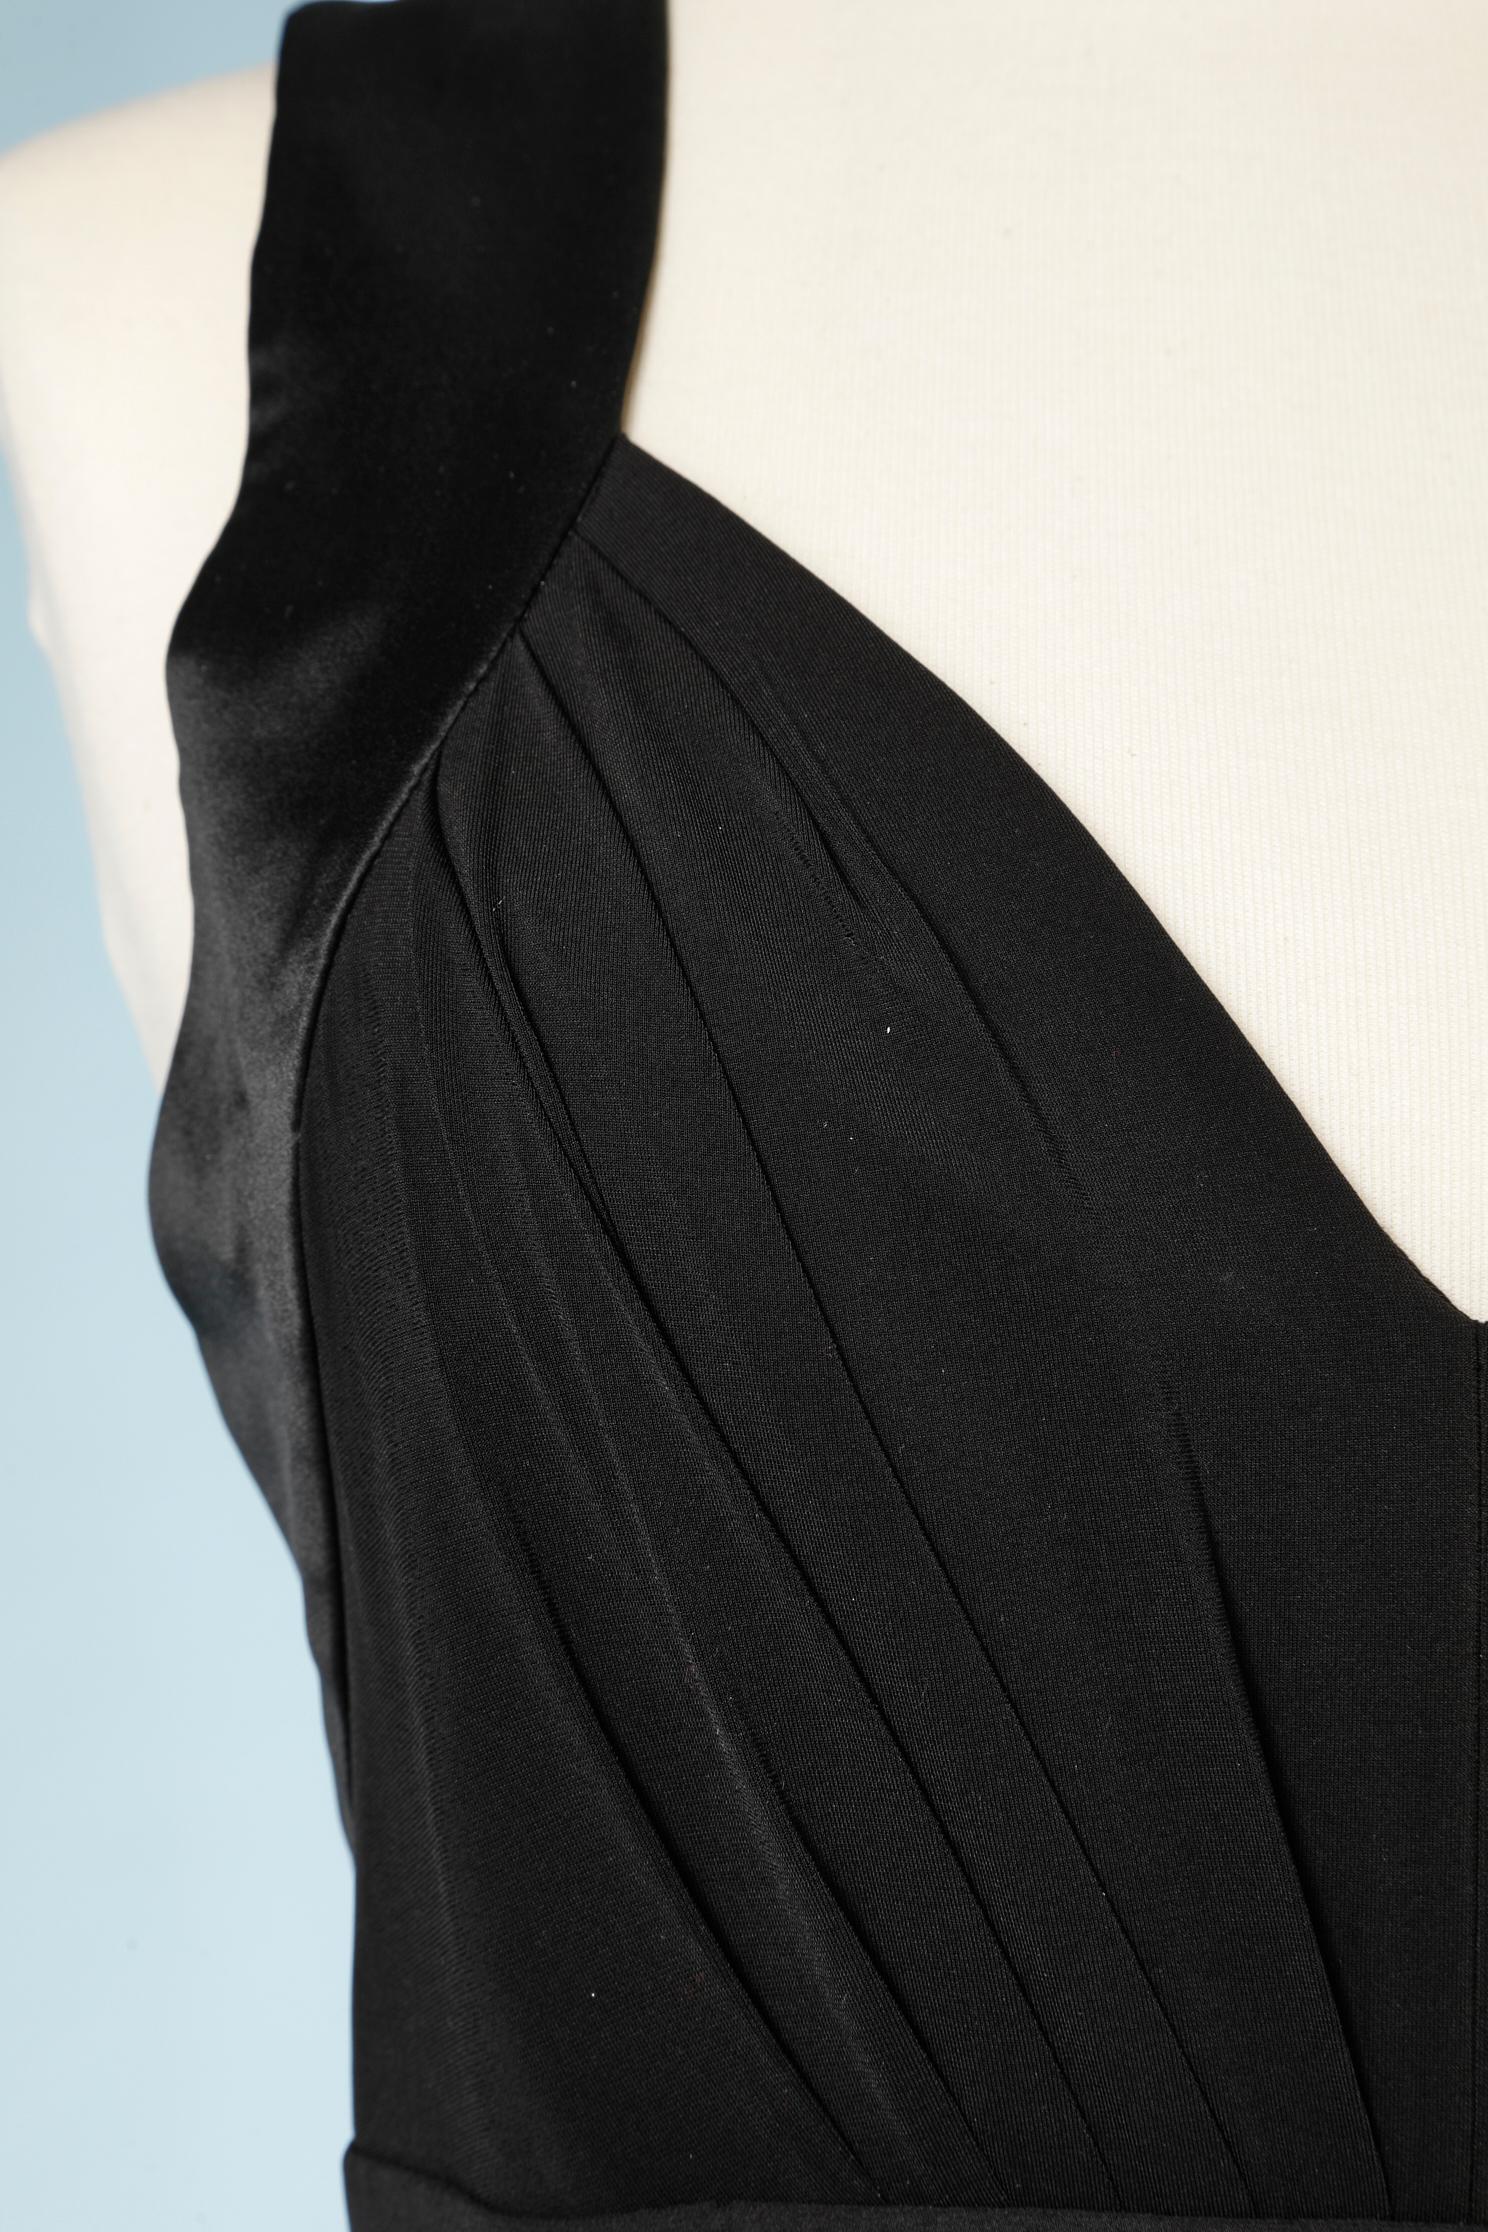 Robe de cocktail noire, la ceinture (attachée à la taille) doit être nouée au milieu du dos. 
 Coquille : 69% acétate, 23% nylon, 8% spandex. Contraste (ceinture) : soie
Doublure : polyester et élasthanne
Fermeture éclair invisible au milieu du dos